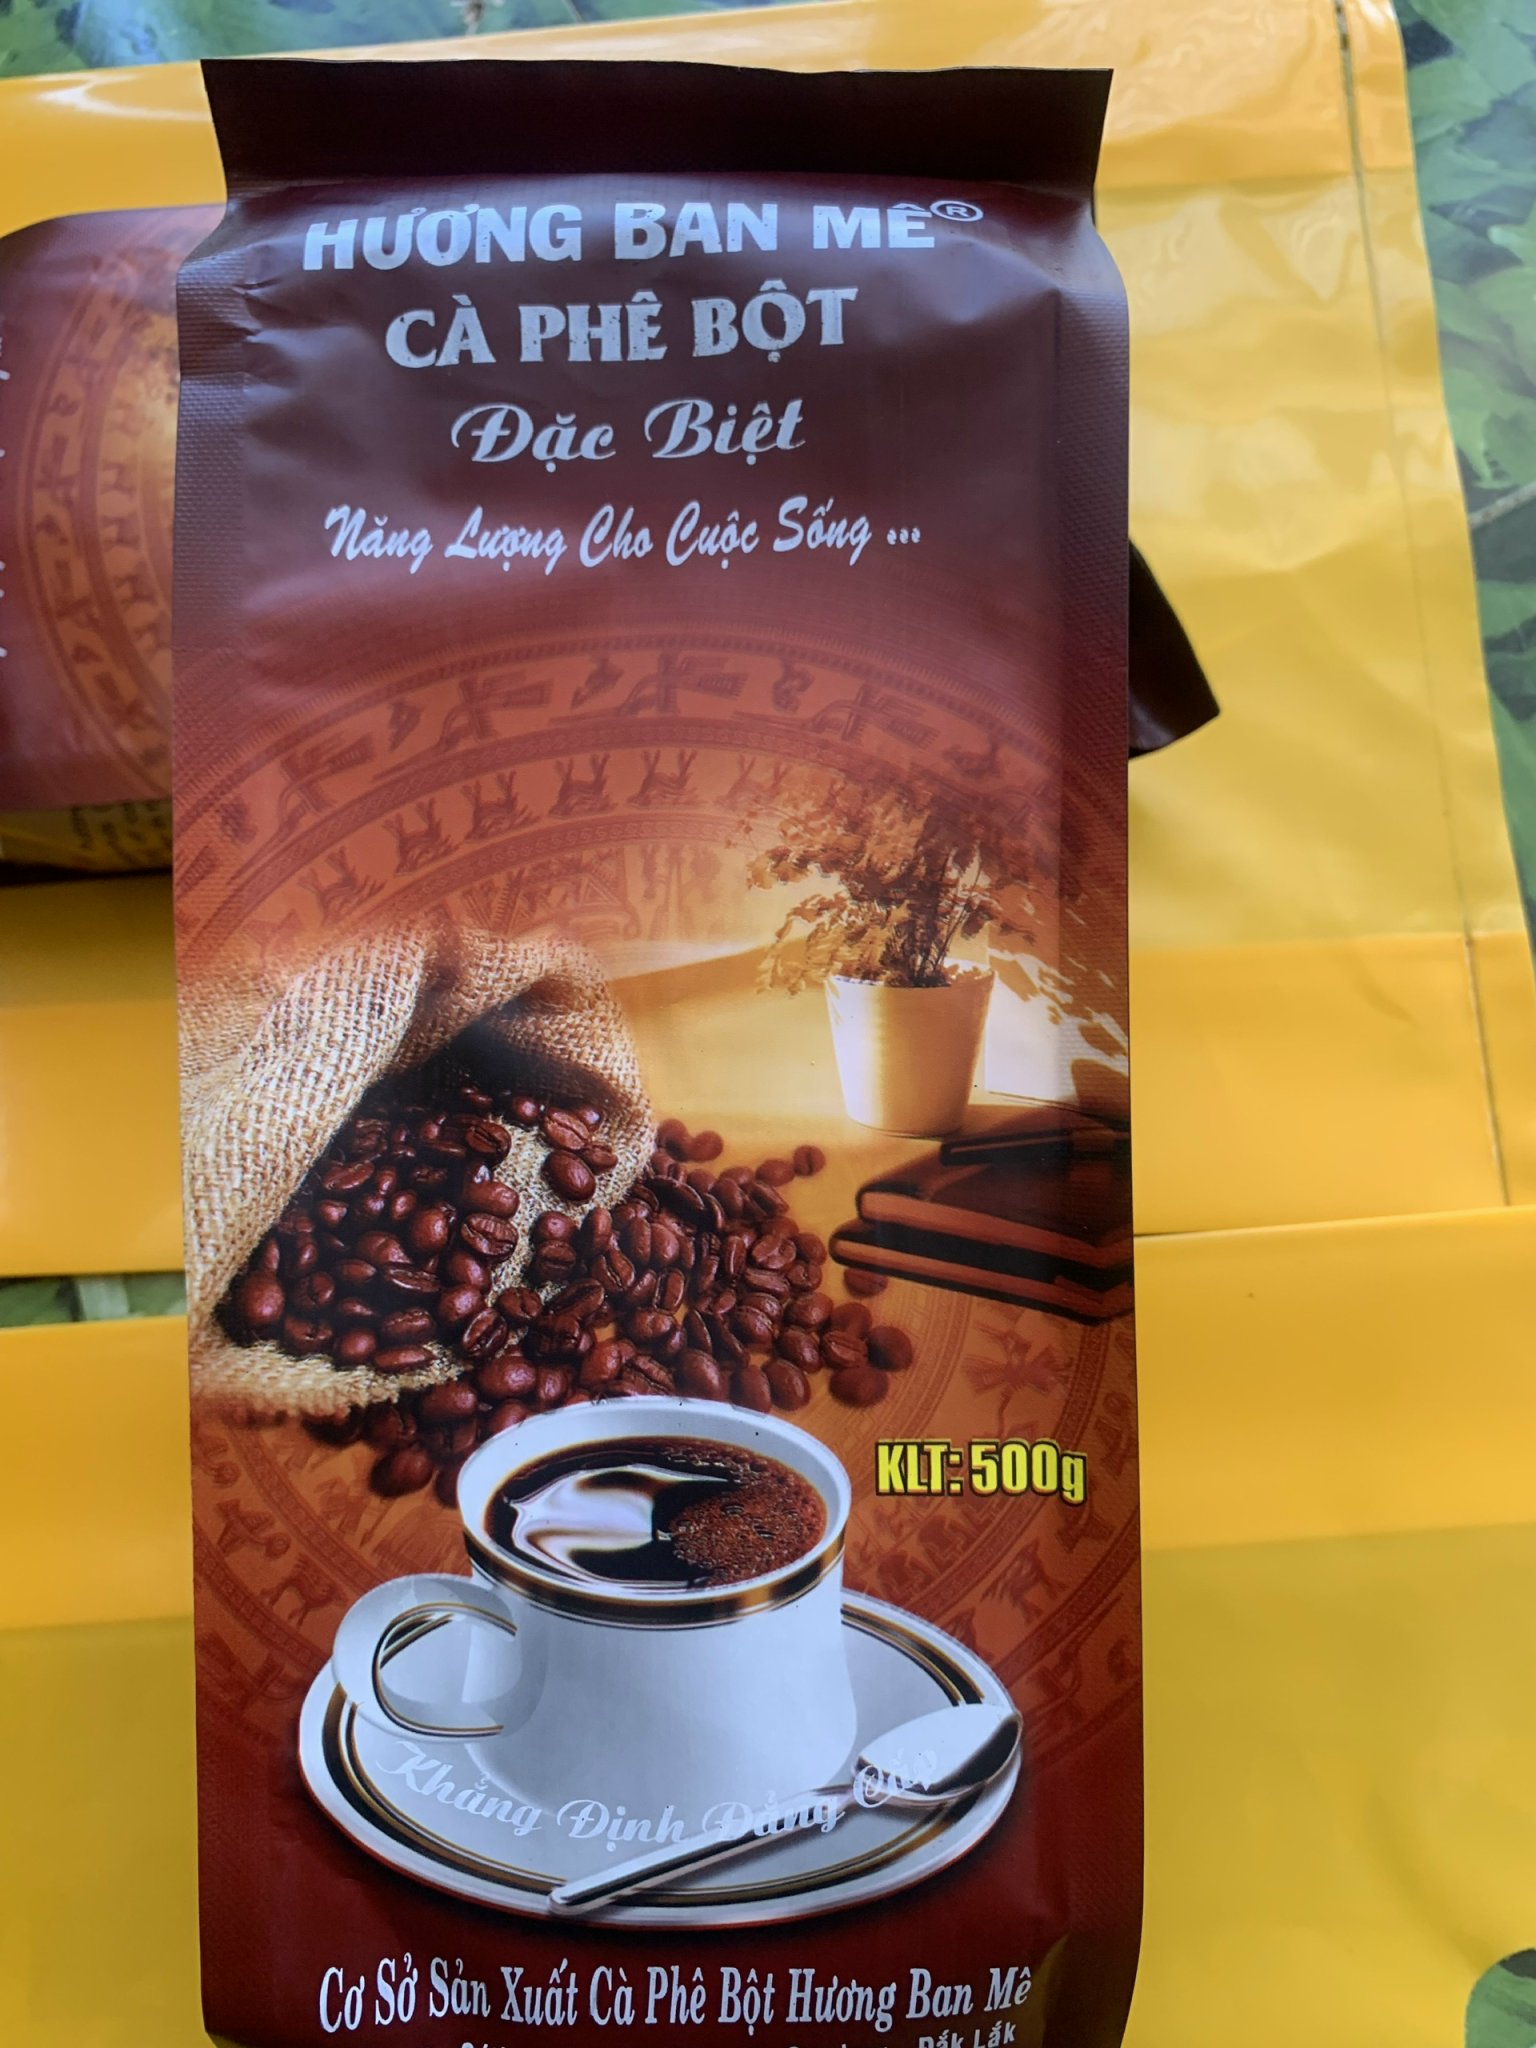 SALE SỐC NHIỆT Cà phê sạch-Cà phê nguyên chất HƯƠNG BAN MÊ thượng hạng thumbnail